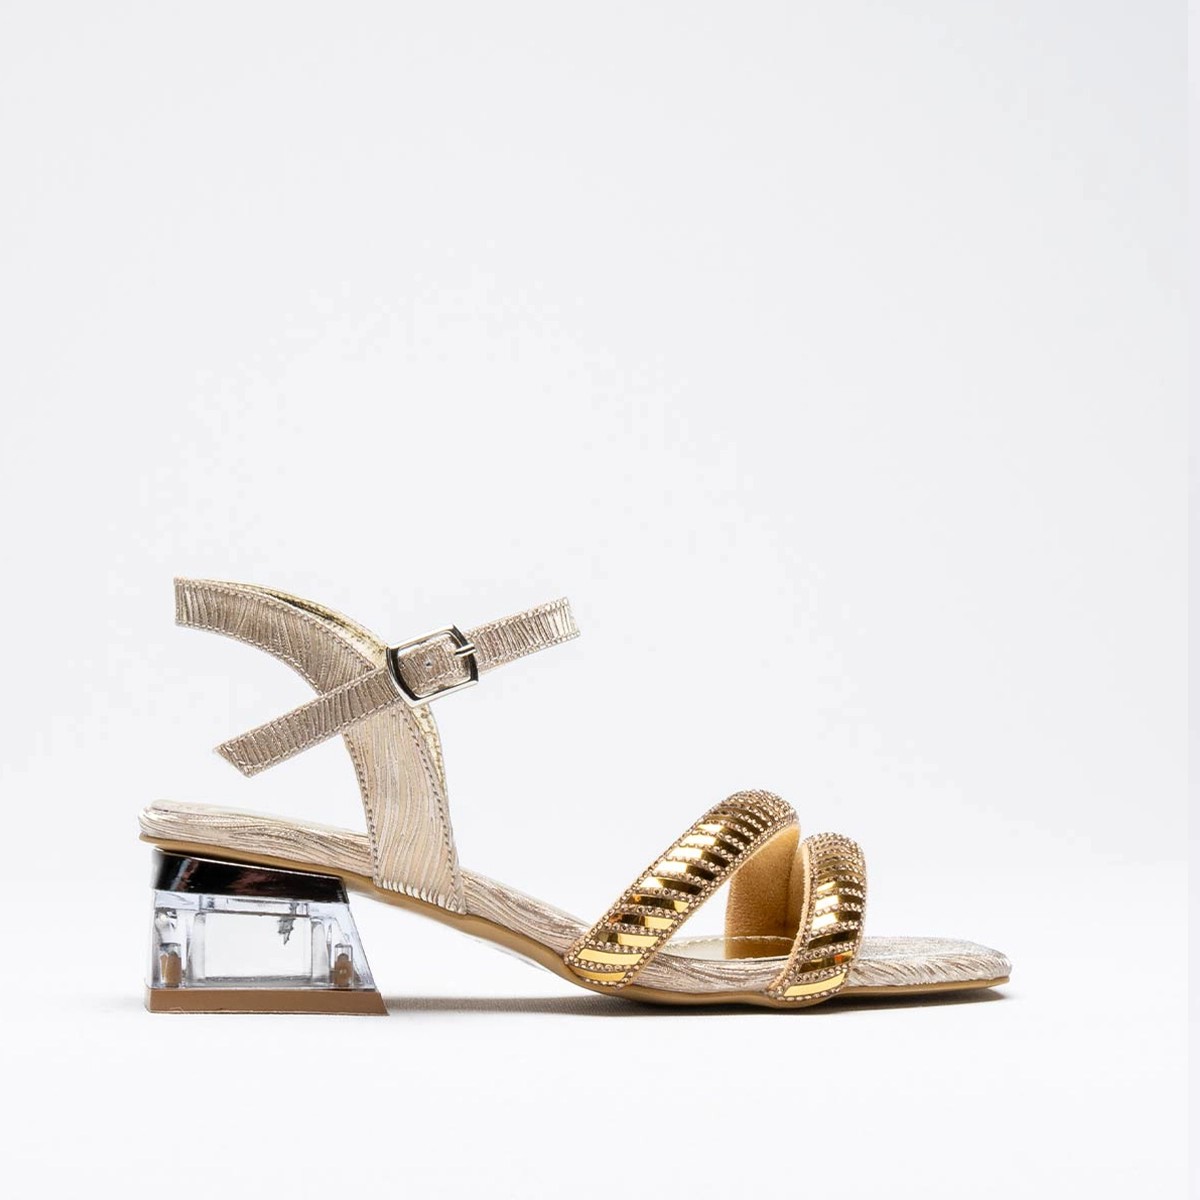 Tekstil Taşlı Kalın Kısa Topuklu Sandalet - Gold